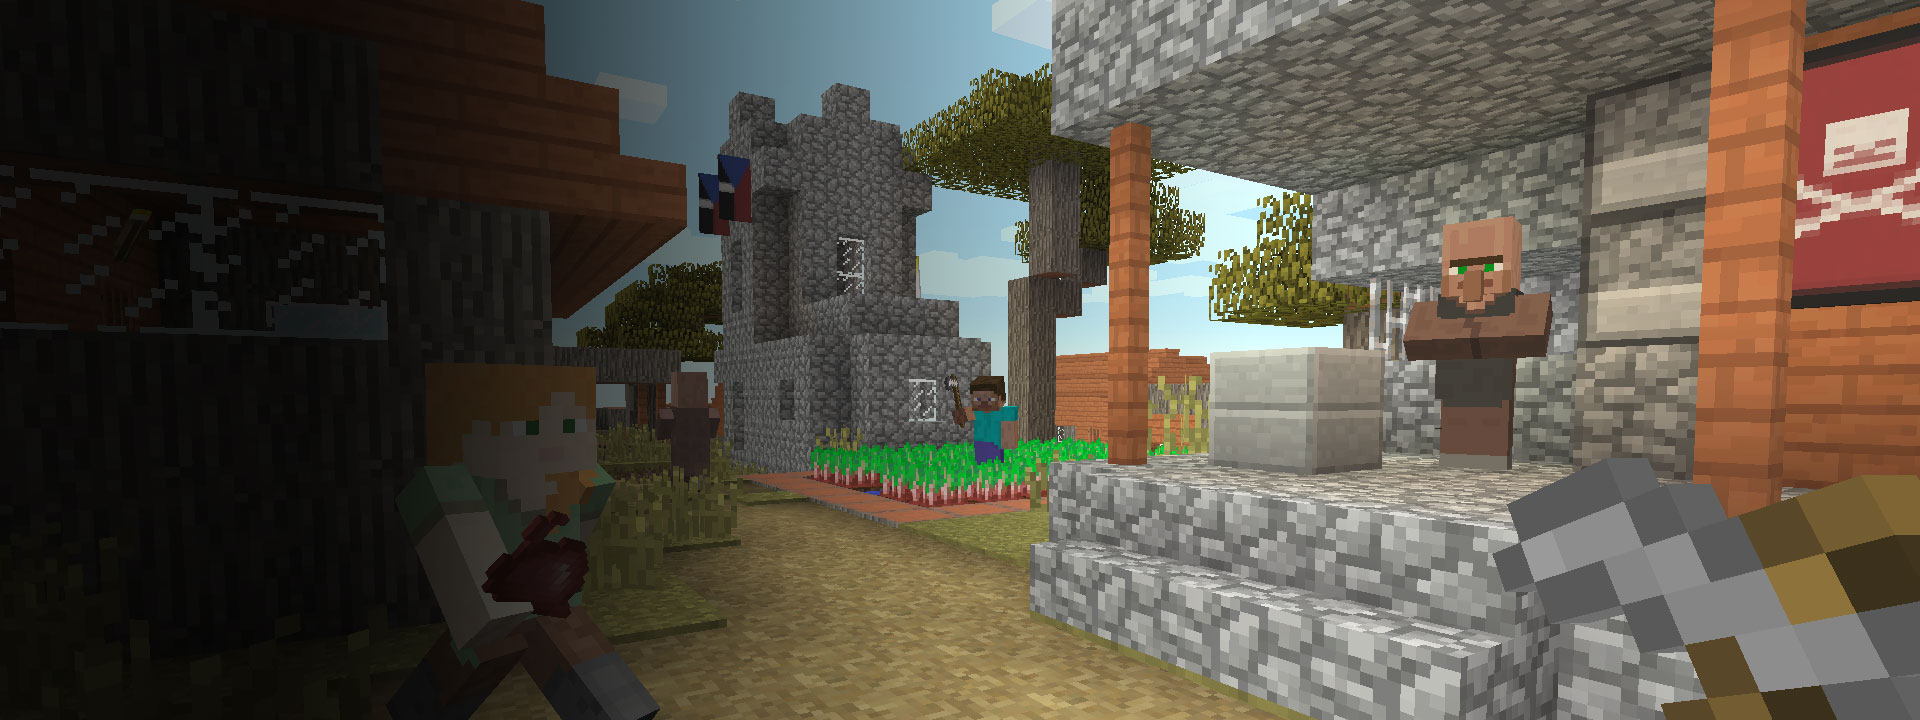 Plusieurs maisons et des personnages de Minecraft marchant au premier plan.